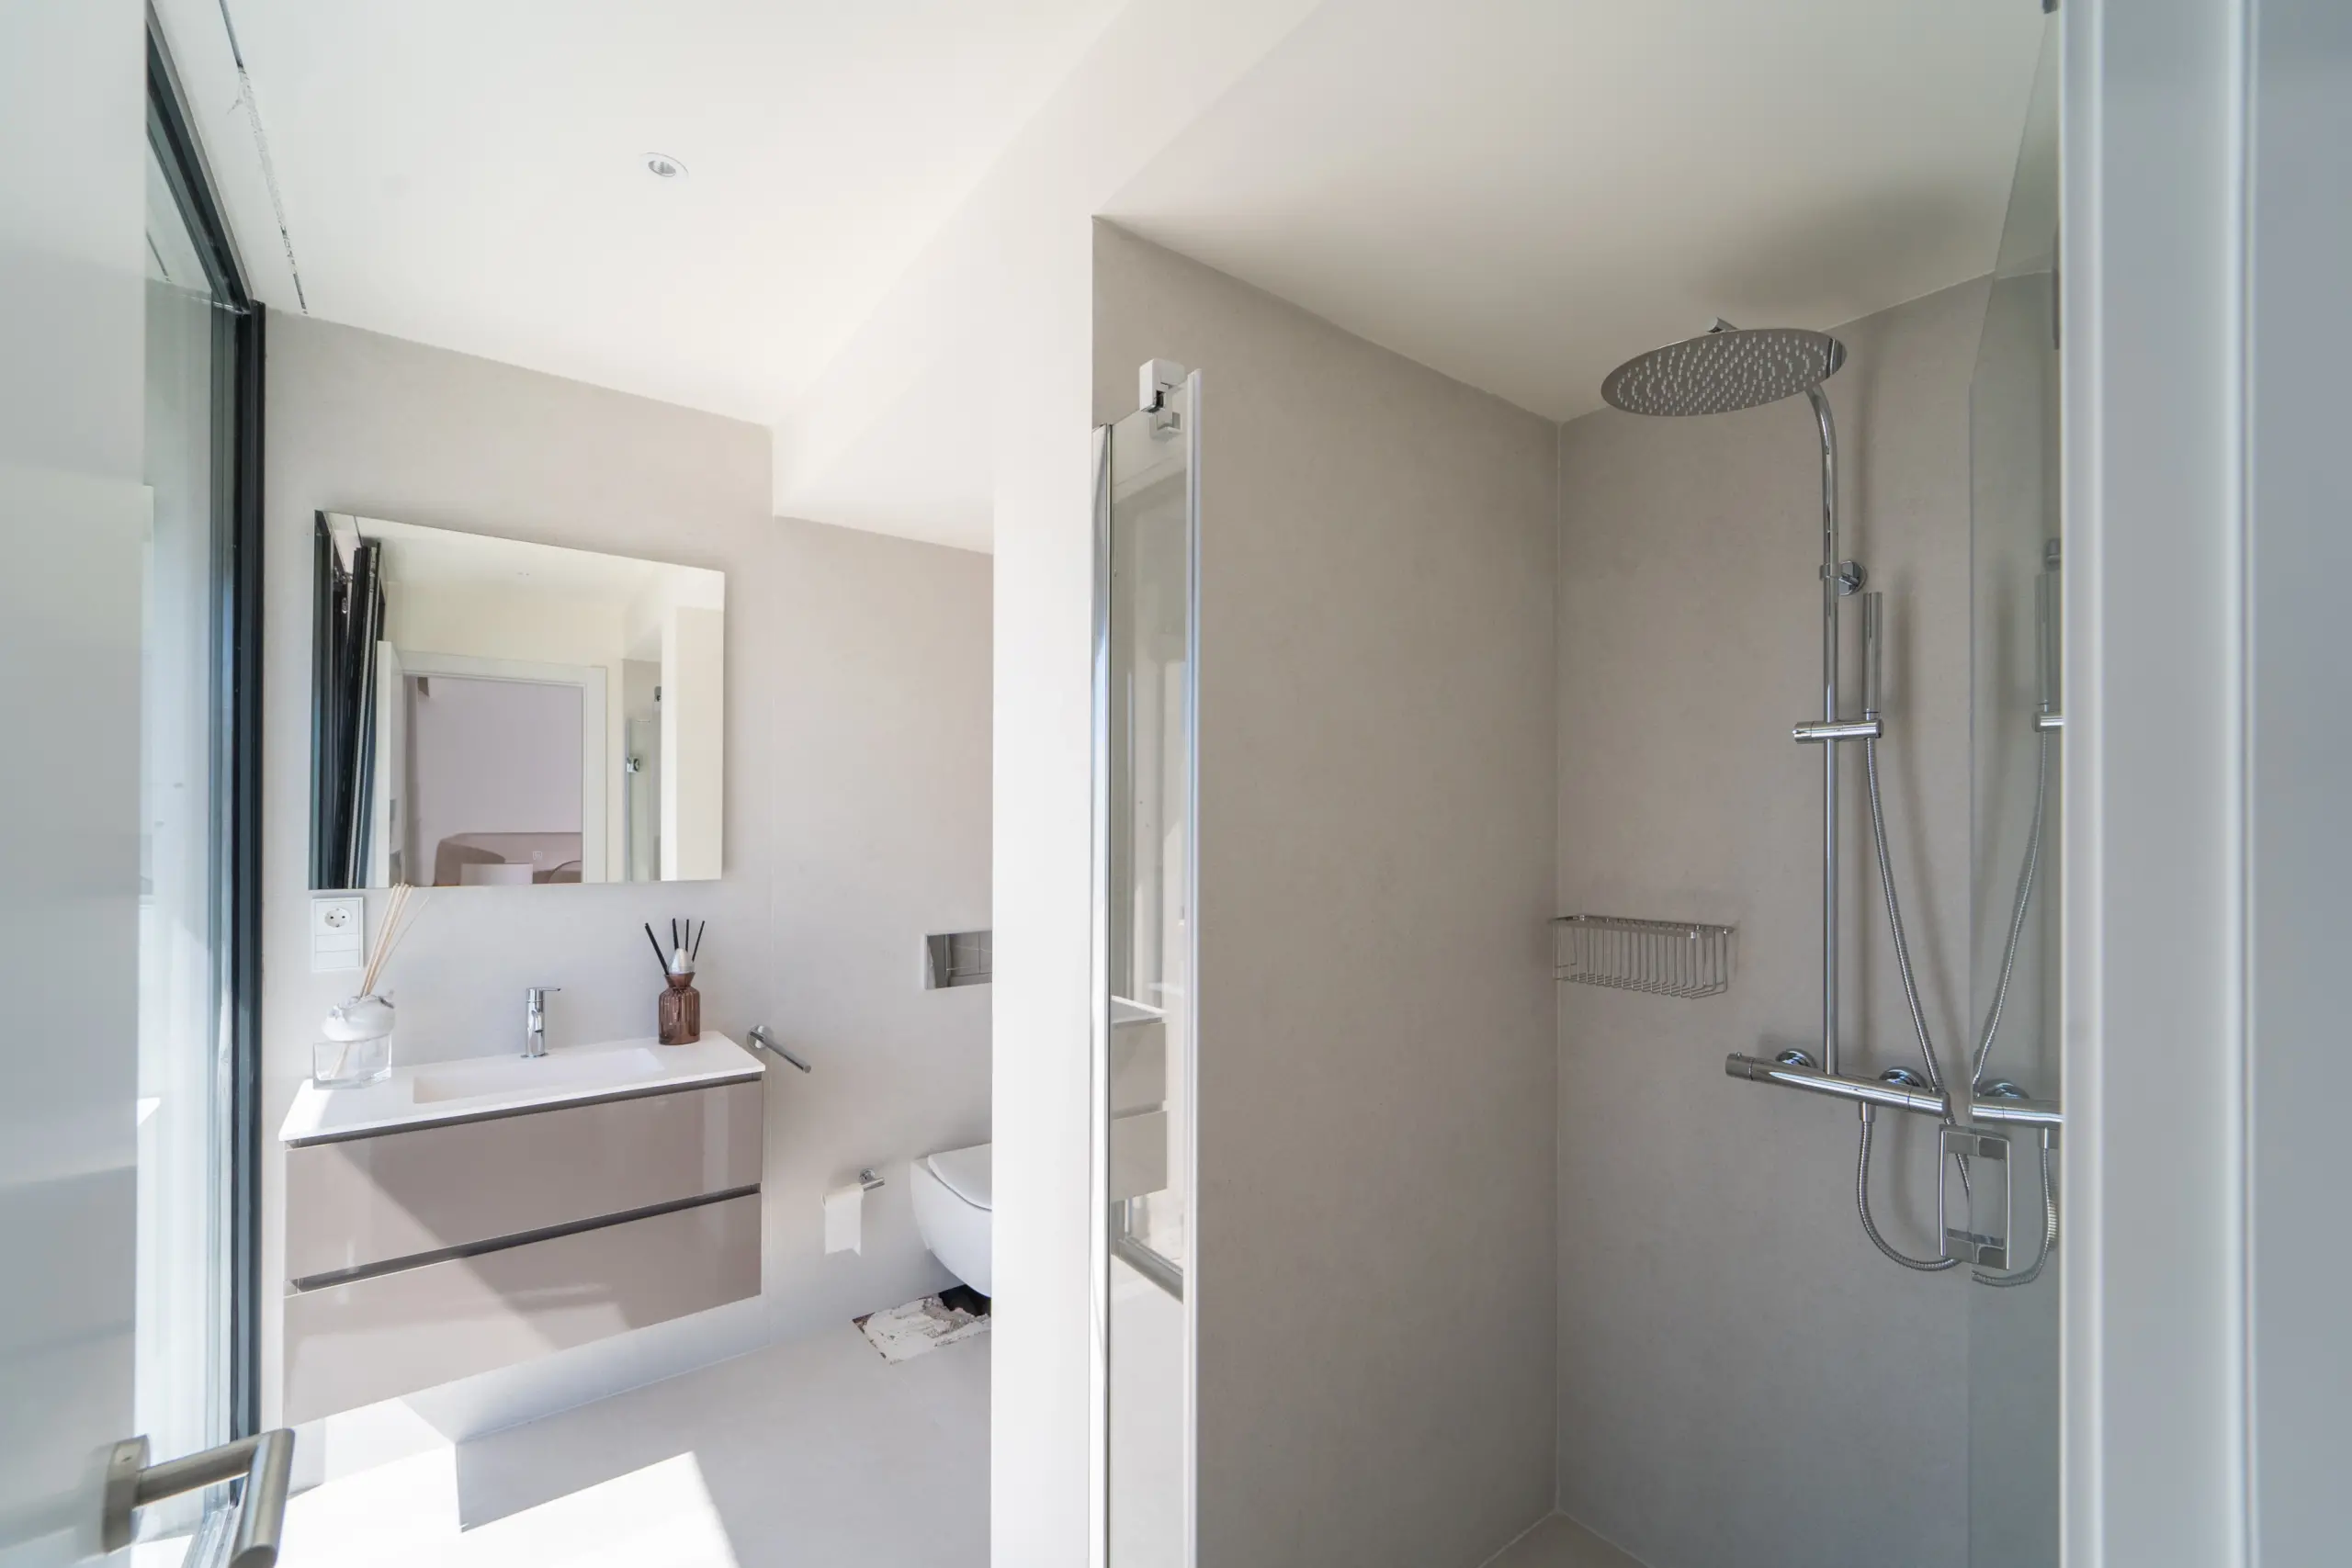 Interior de un baño moderno y luminoso, equipado con una ducha de cabezal grande, espejo grande que refleja una vista parcial del dormitorio contiguo y un lavamanos con accesorios modernos. Diseño simple y colores neutros dominan el espacio.